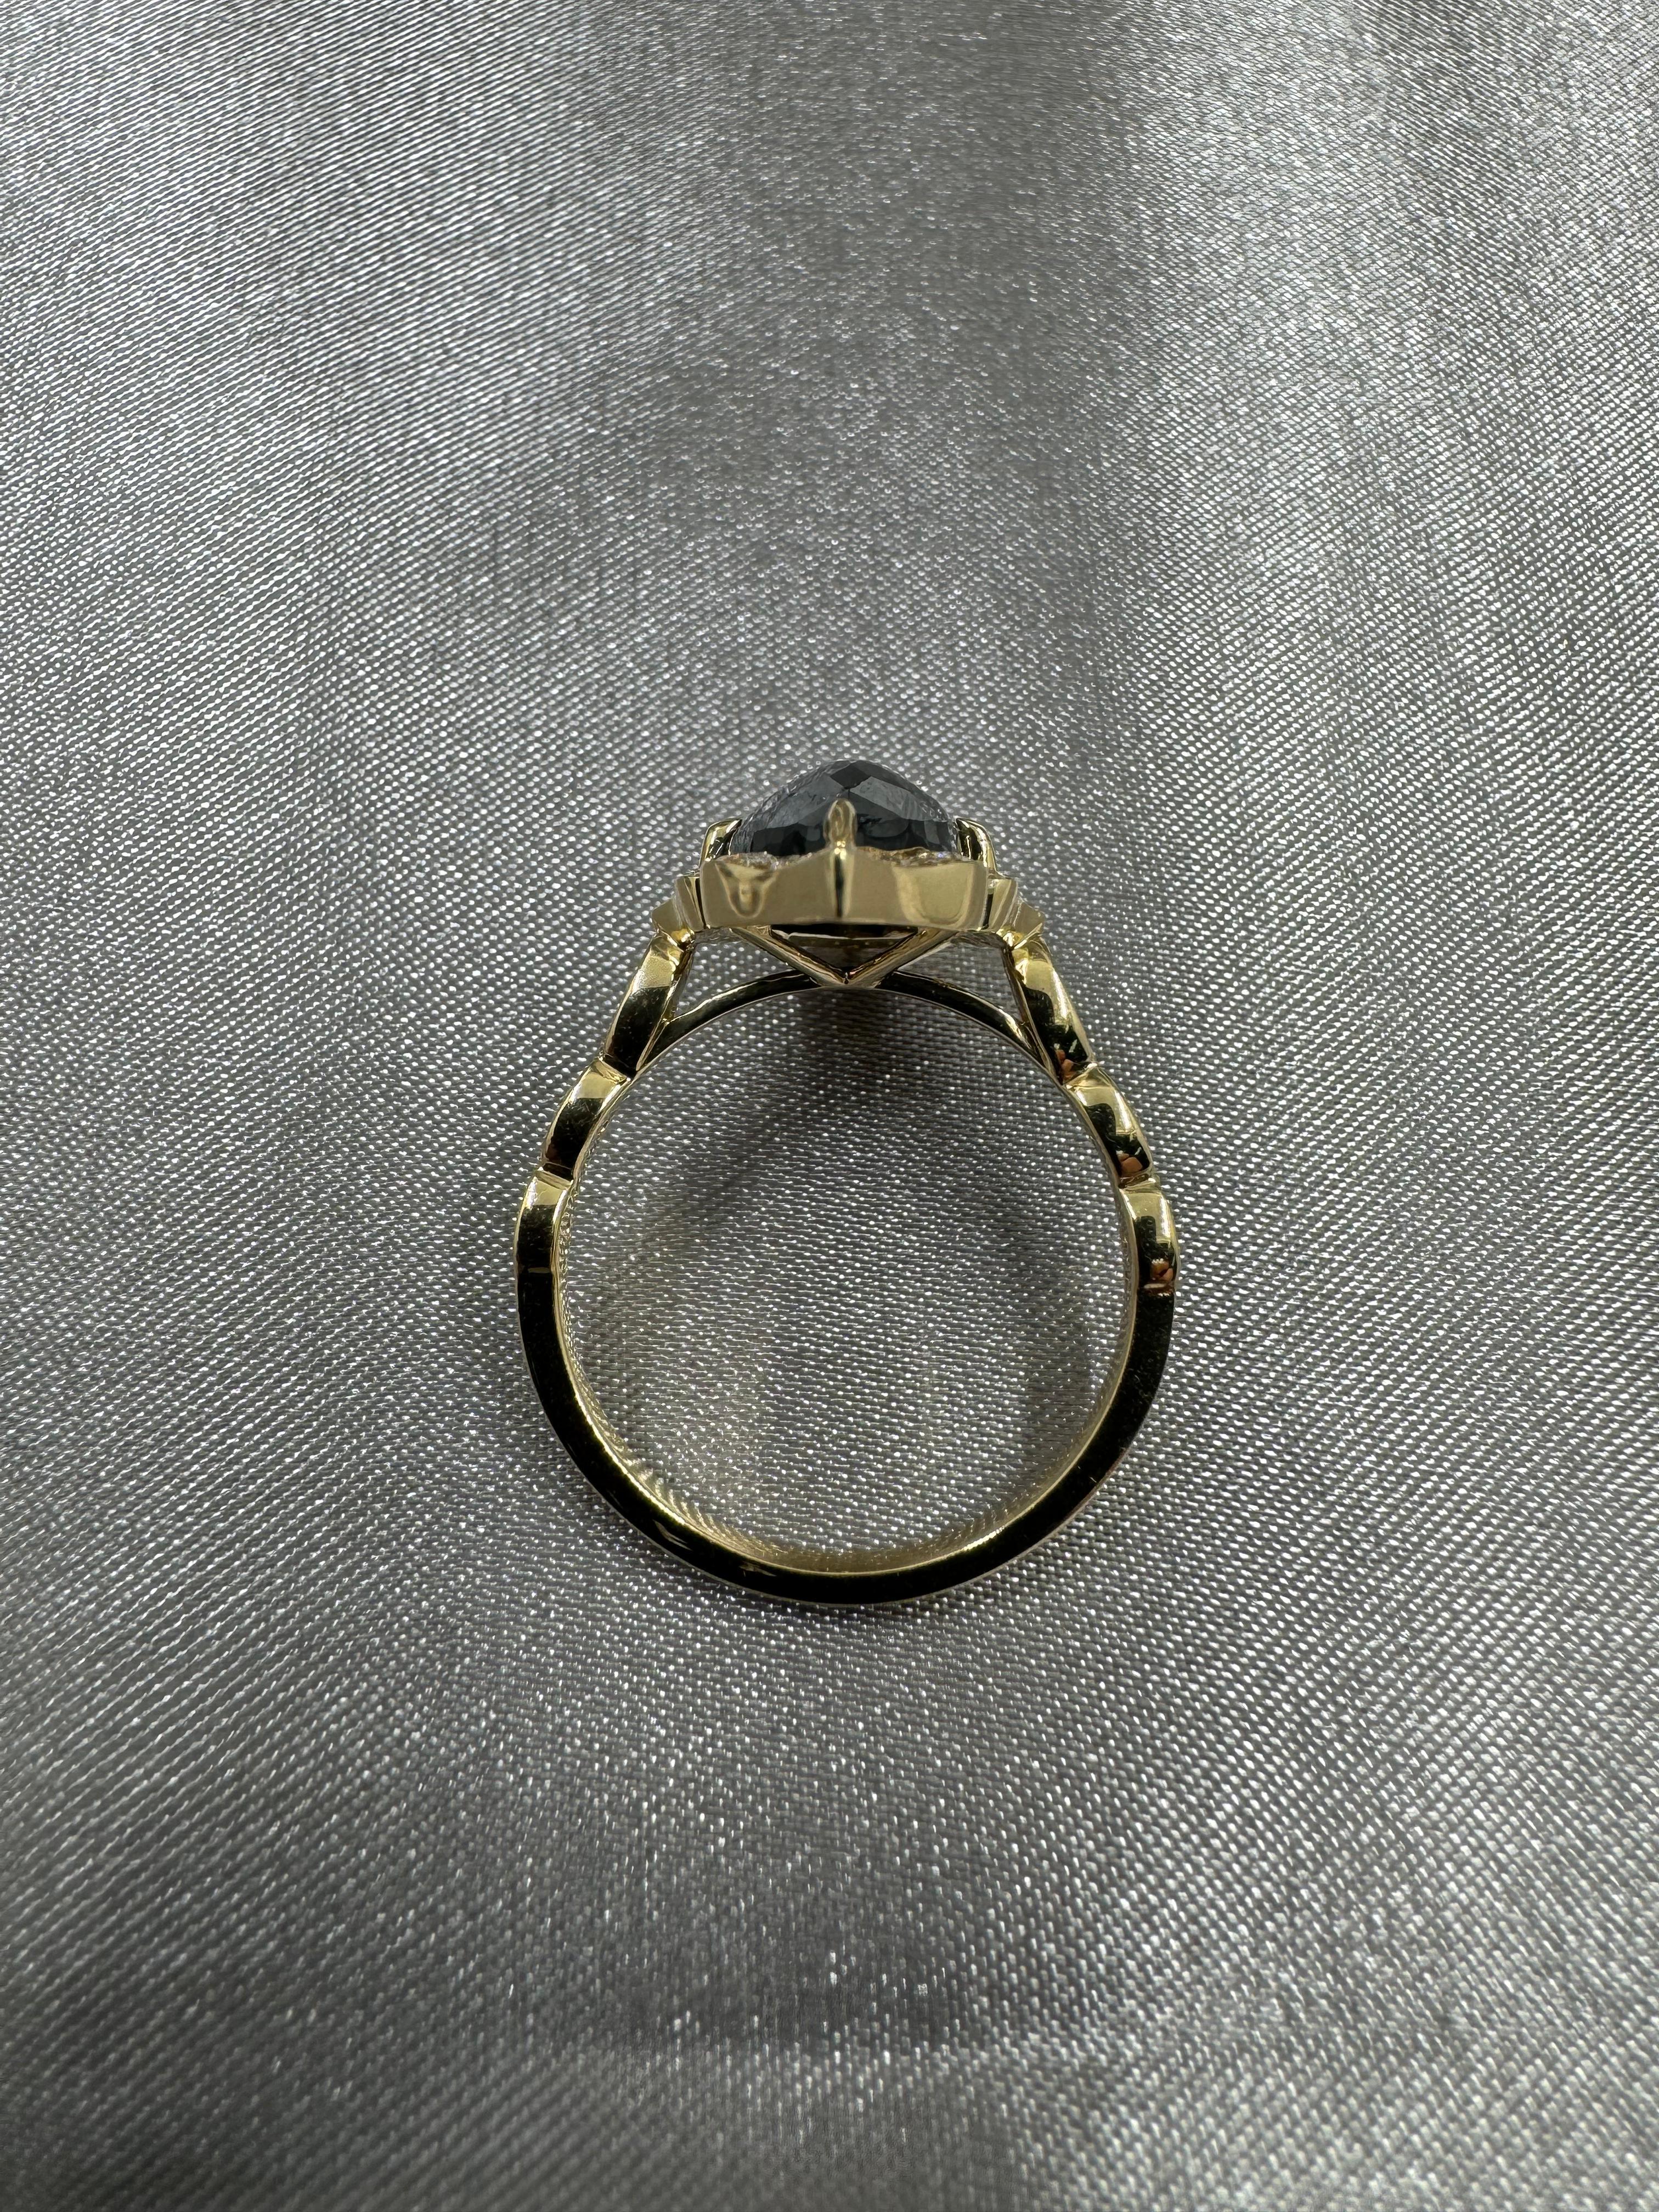 Rose Cut IGI CERTIFIED Vintage 3.63 Carat Black Diamond Ring in 14 Karat Yellow Gold For Sale